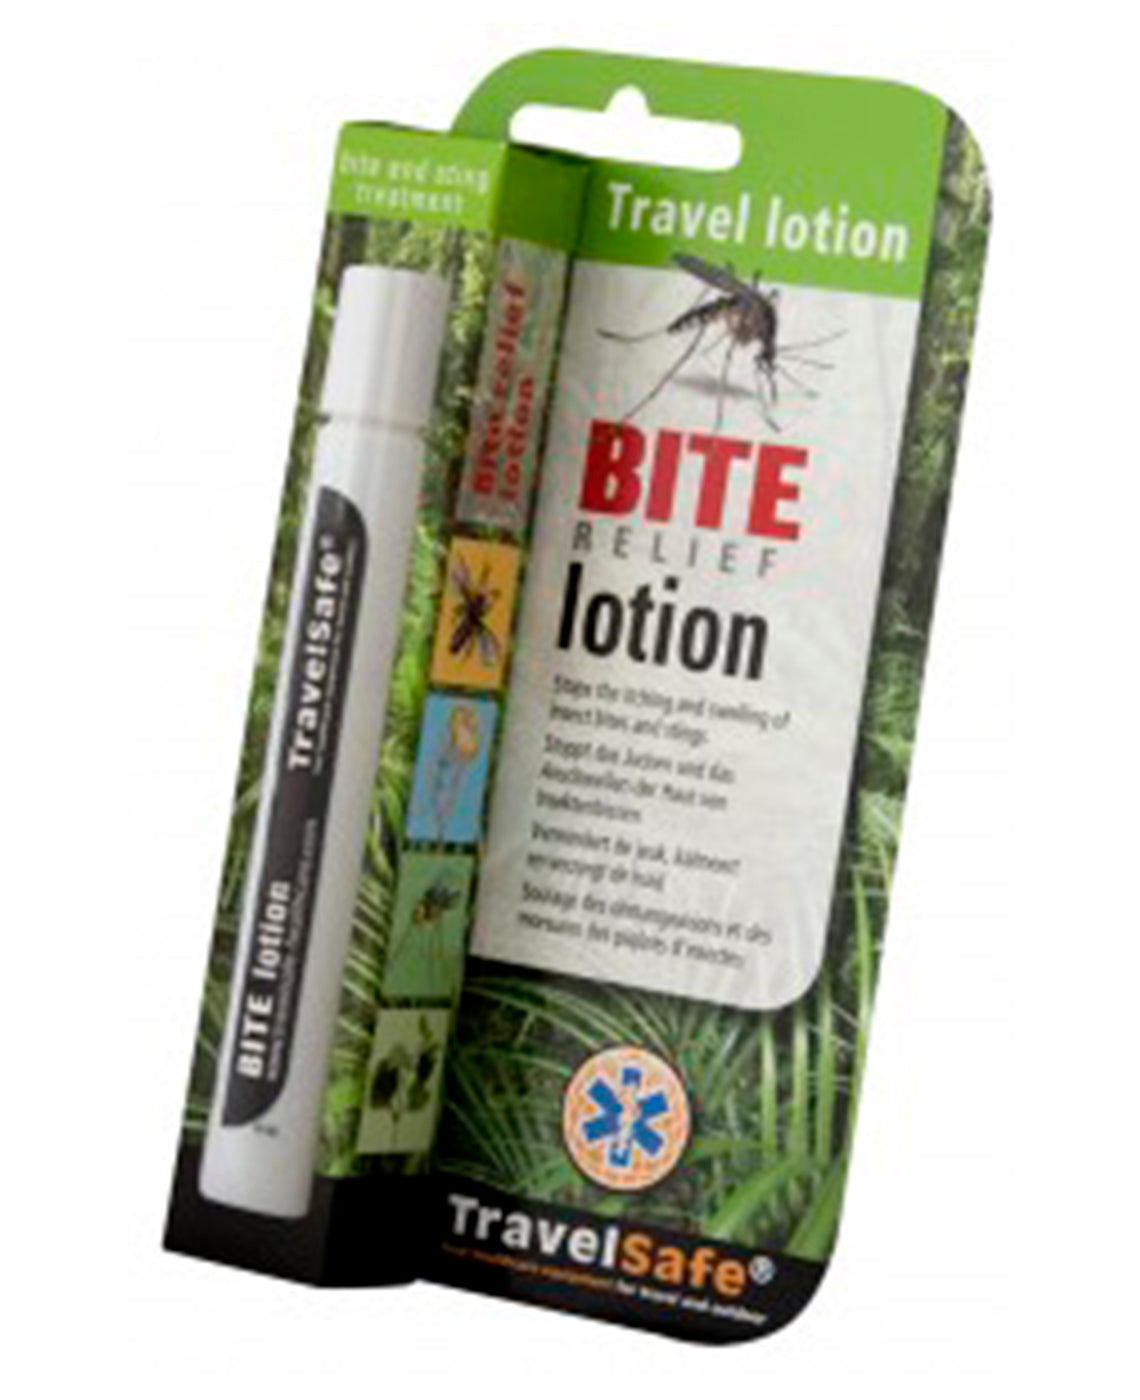 Se TravelSafe Bite relief lotion hos RejseGear.dk